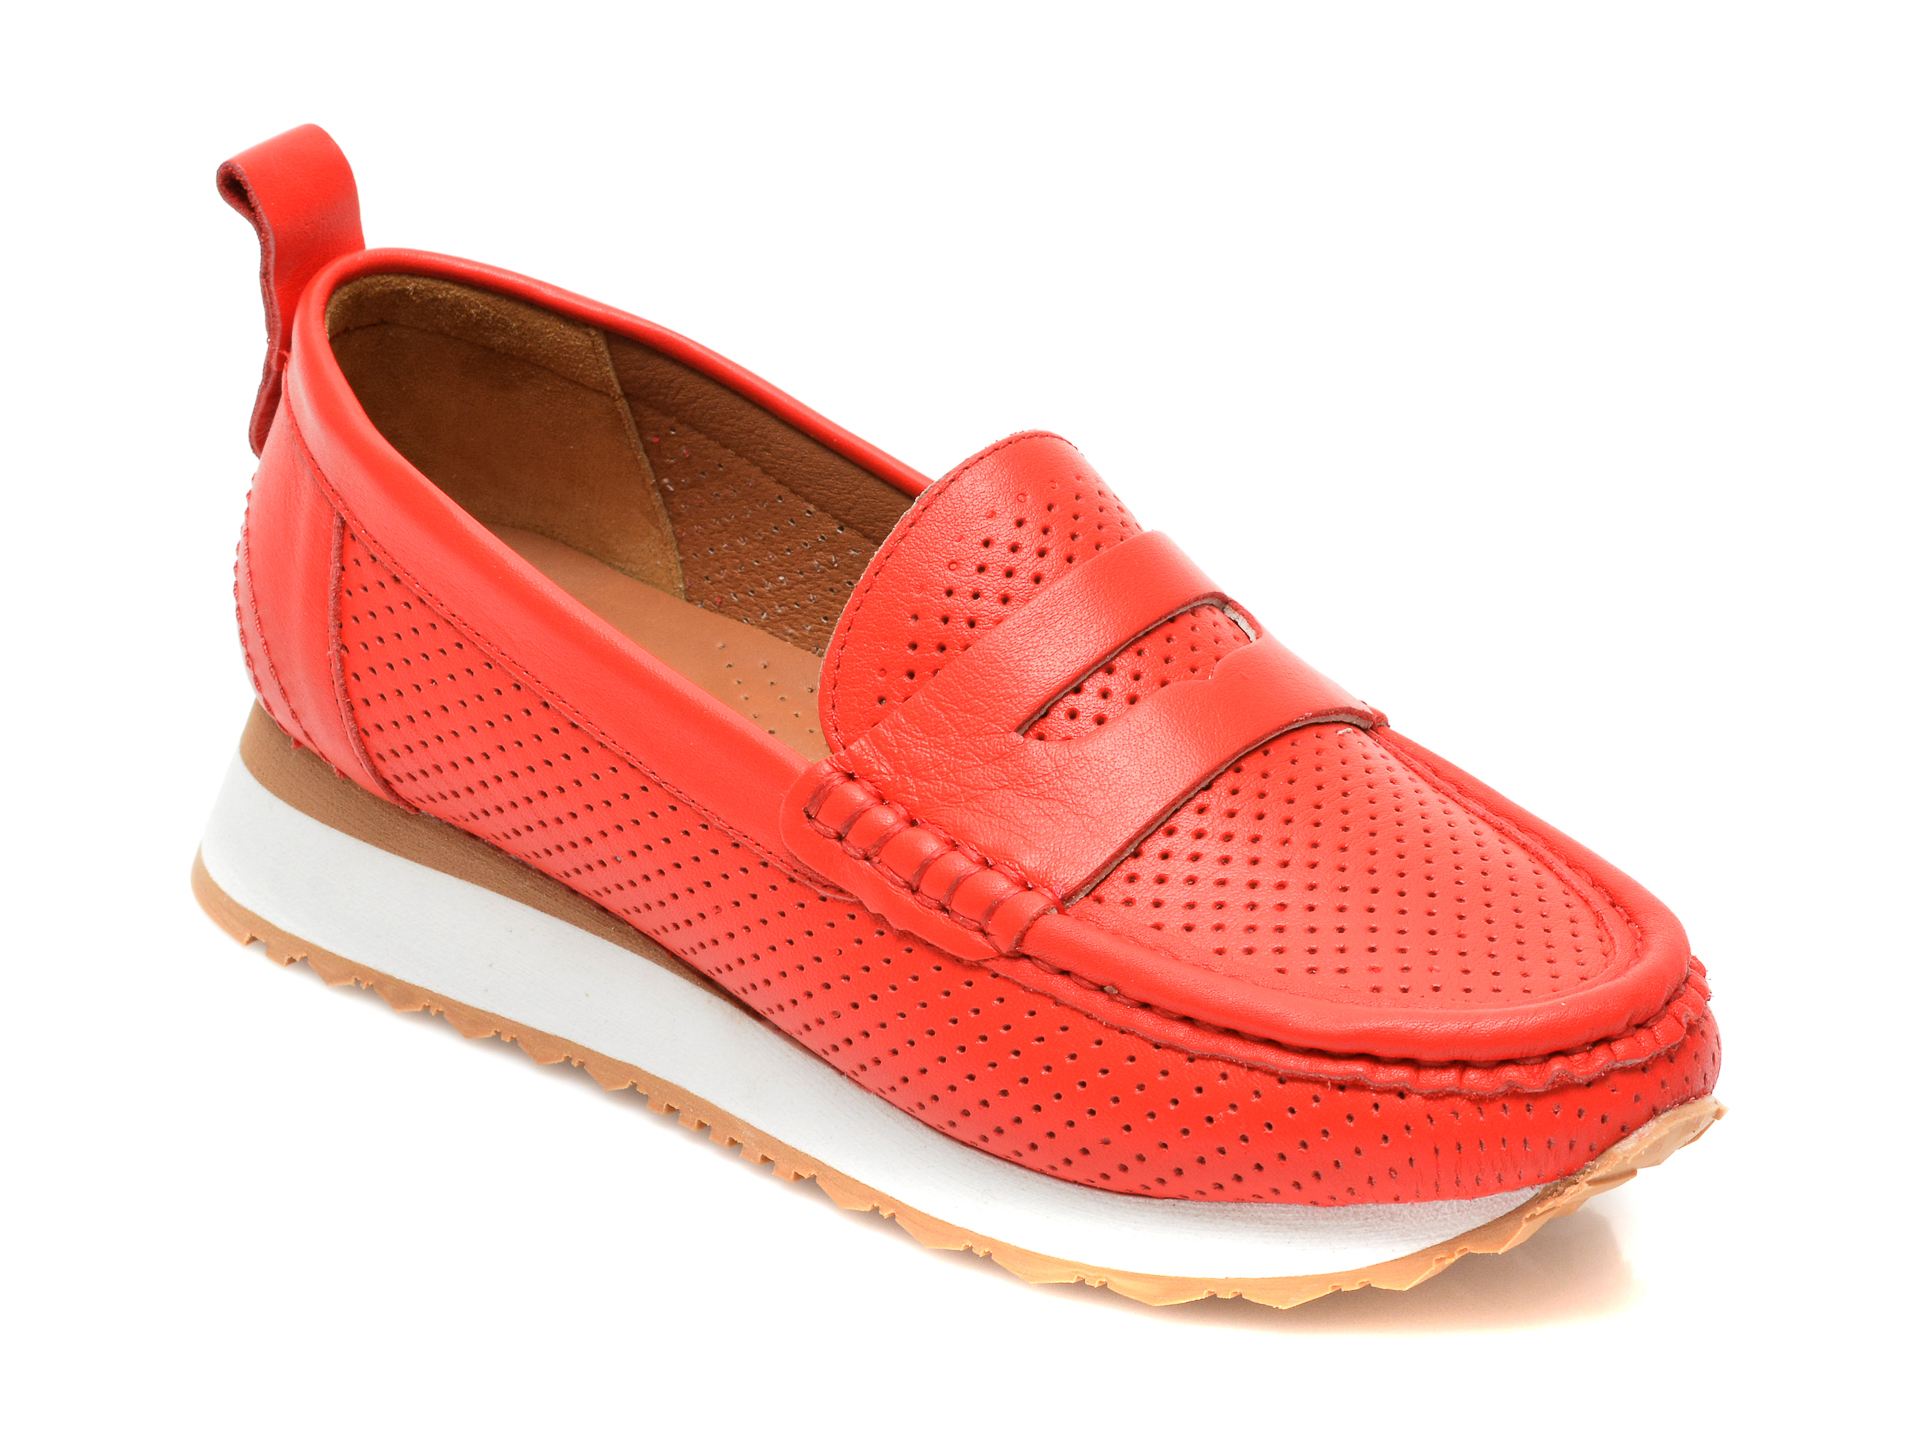 Pantofi FLAVIA PASSINI rosii, 8911907, din piele naturala Flavia Passini imagine noua